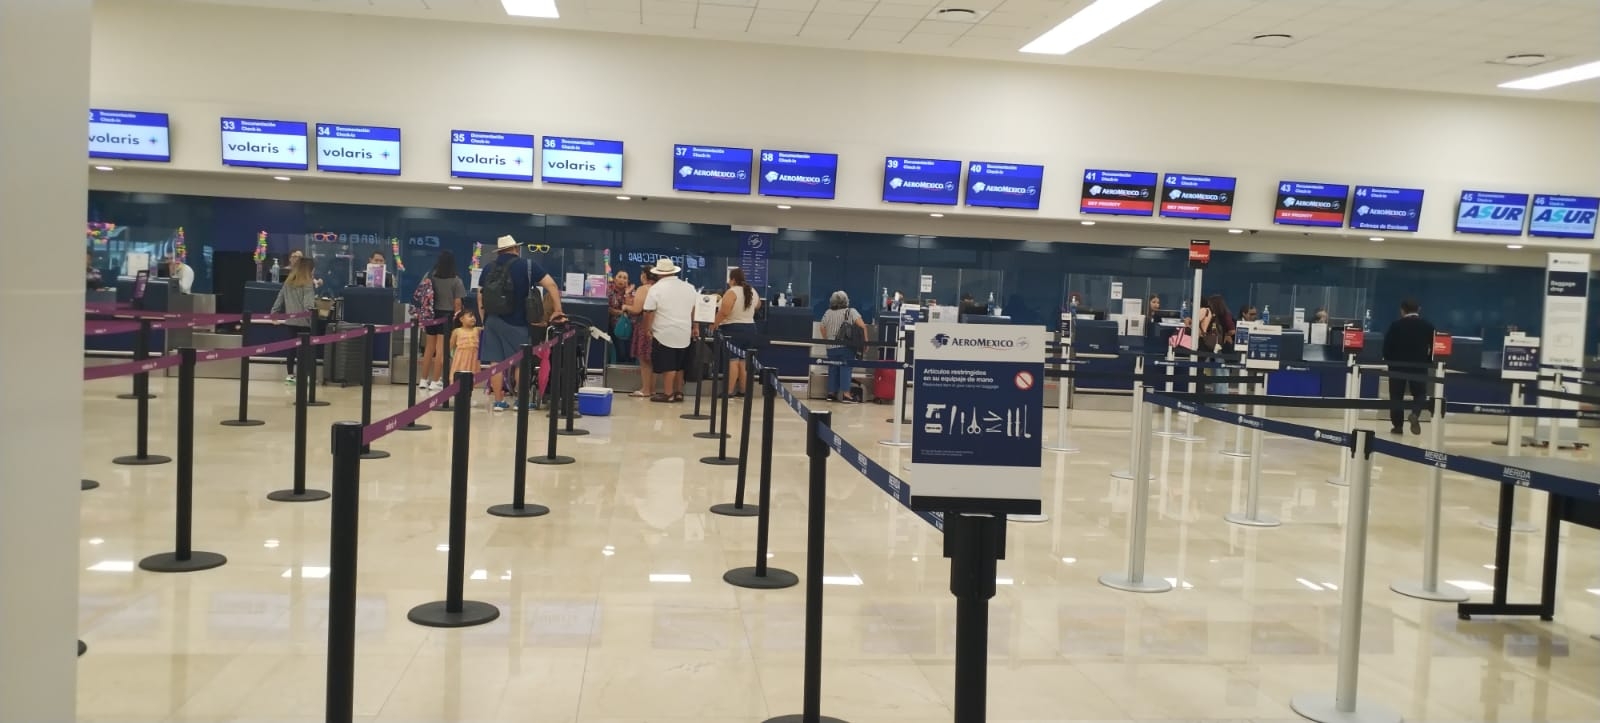 El descanso de la tripulación de Aeroméxico retrasó el vuelo a CDMX